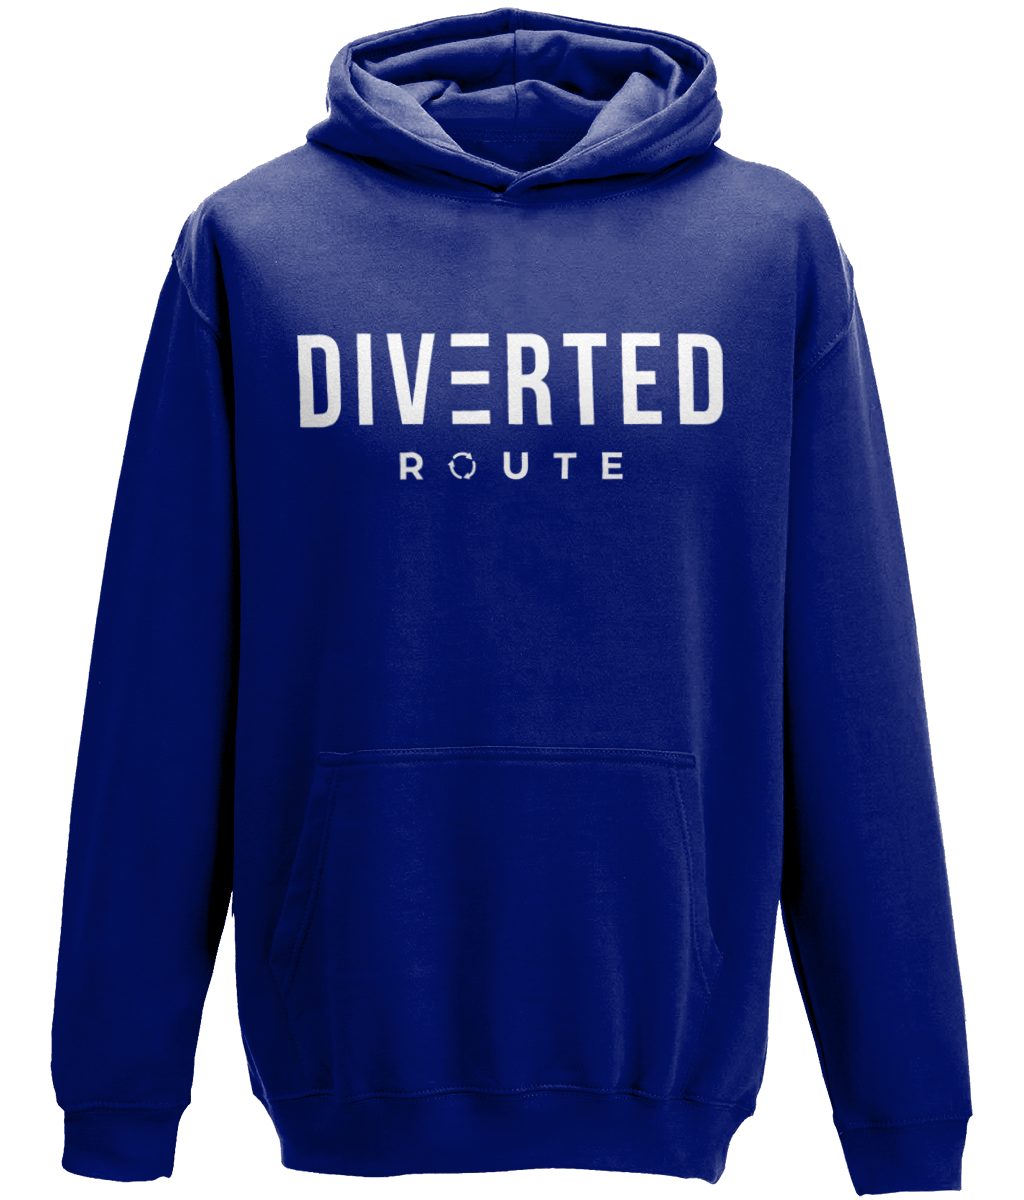 Diverted Route Ltd Unisex OTRP2 Hoody